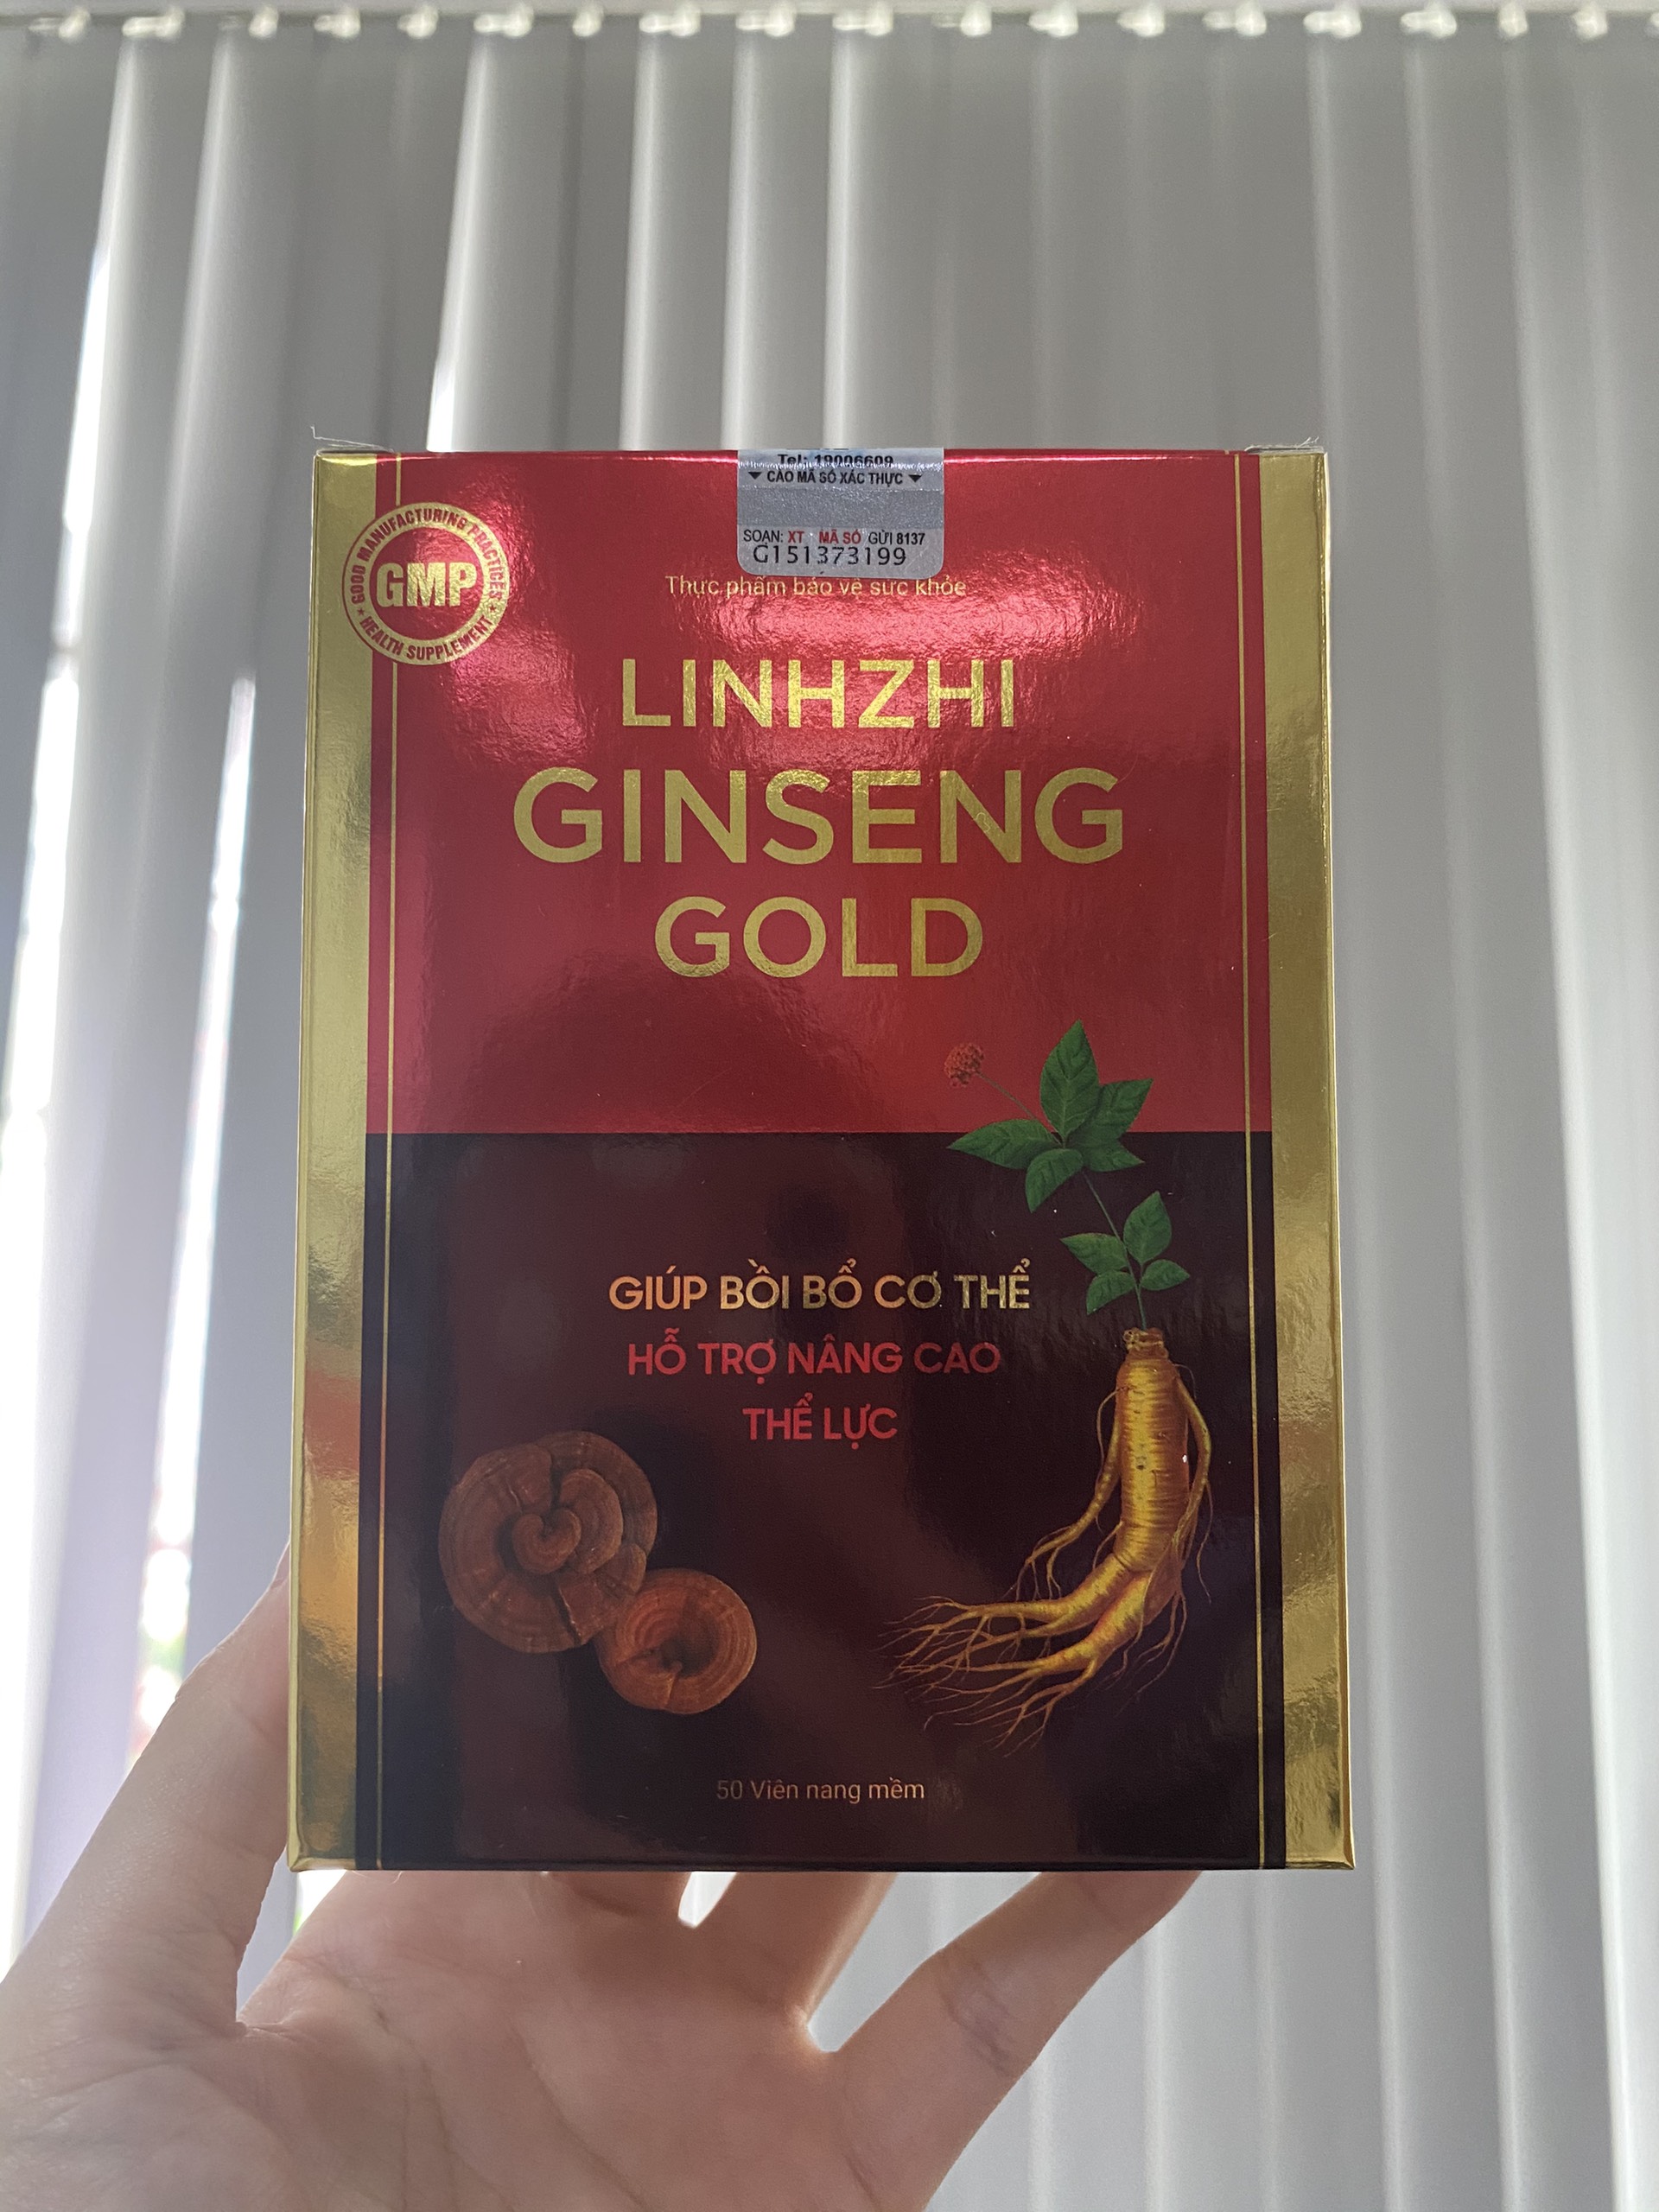 Linhzhi Ginseng Gold - Giúp bồi bổ cơ thể, hỗ trợ nâng cao thể lực, tăng cường sức đề kháng, hỗ trợ giảm mệt mỏi, suy nhược cơ thể - Hộp 50 viên nang mềm